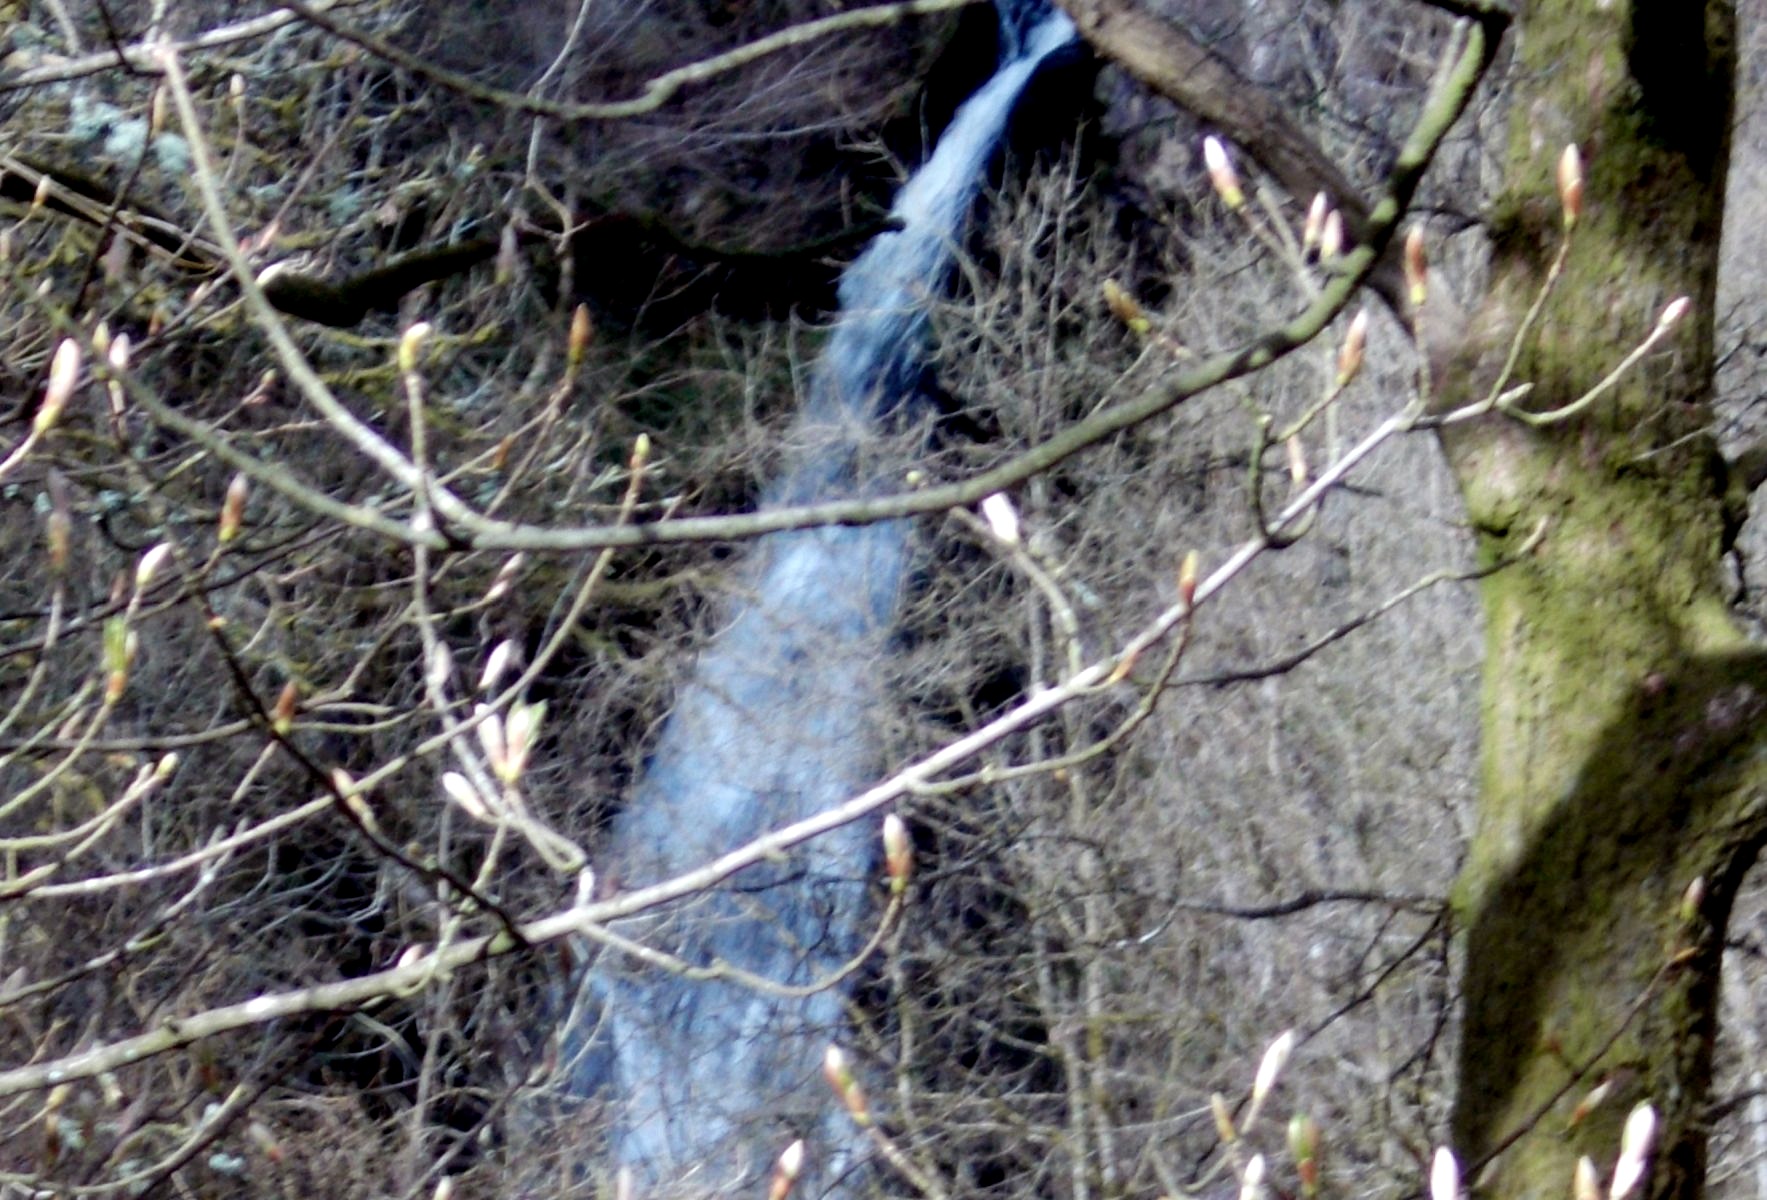 White Spout Waterfall on Finglen Burn in Campsie Glen